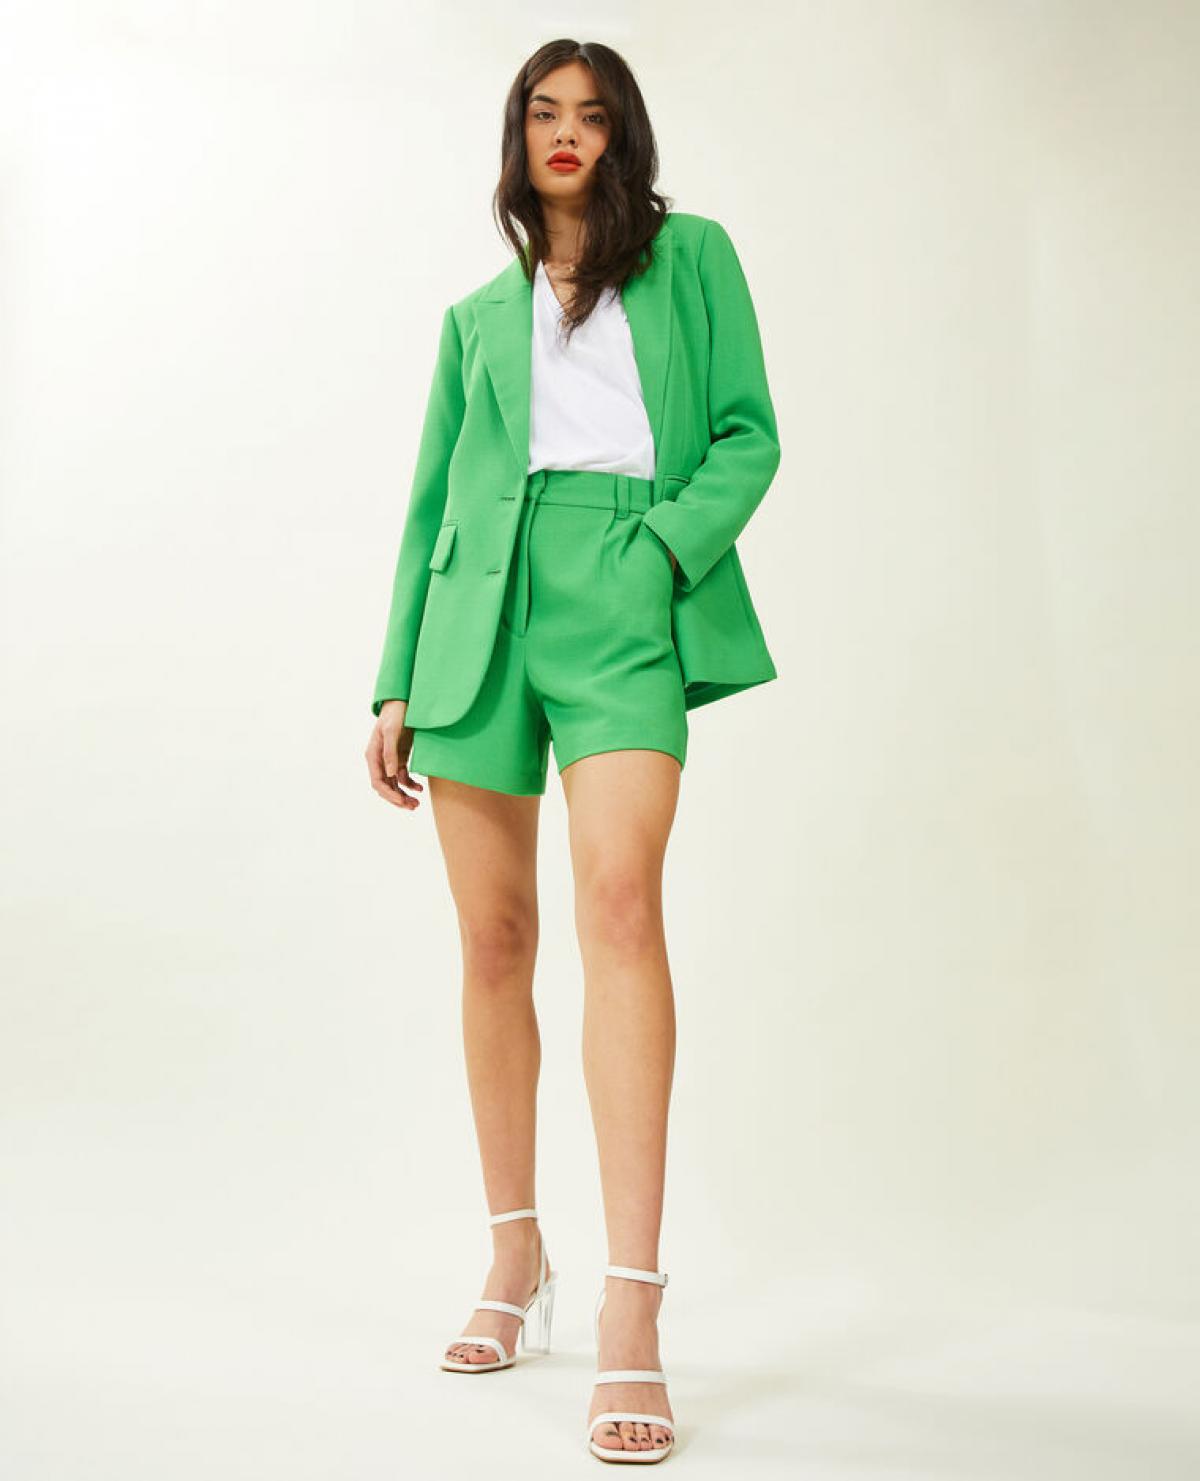 Le blazer cintré vert & short taille haute